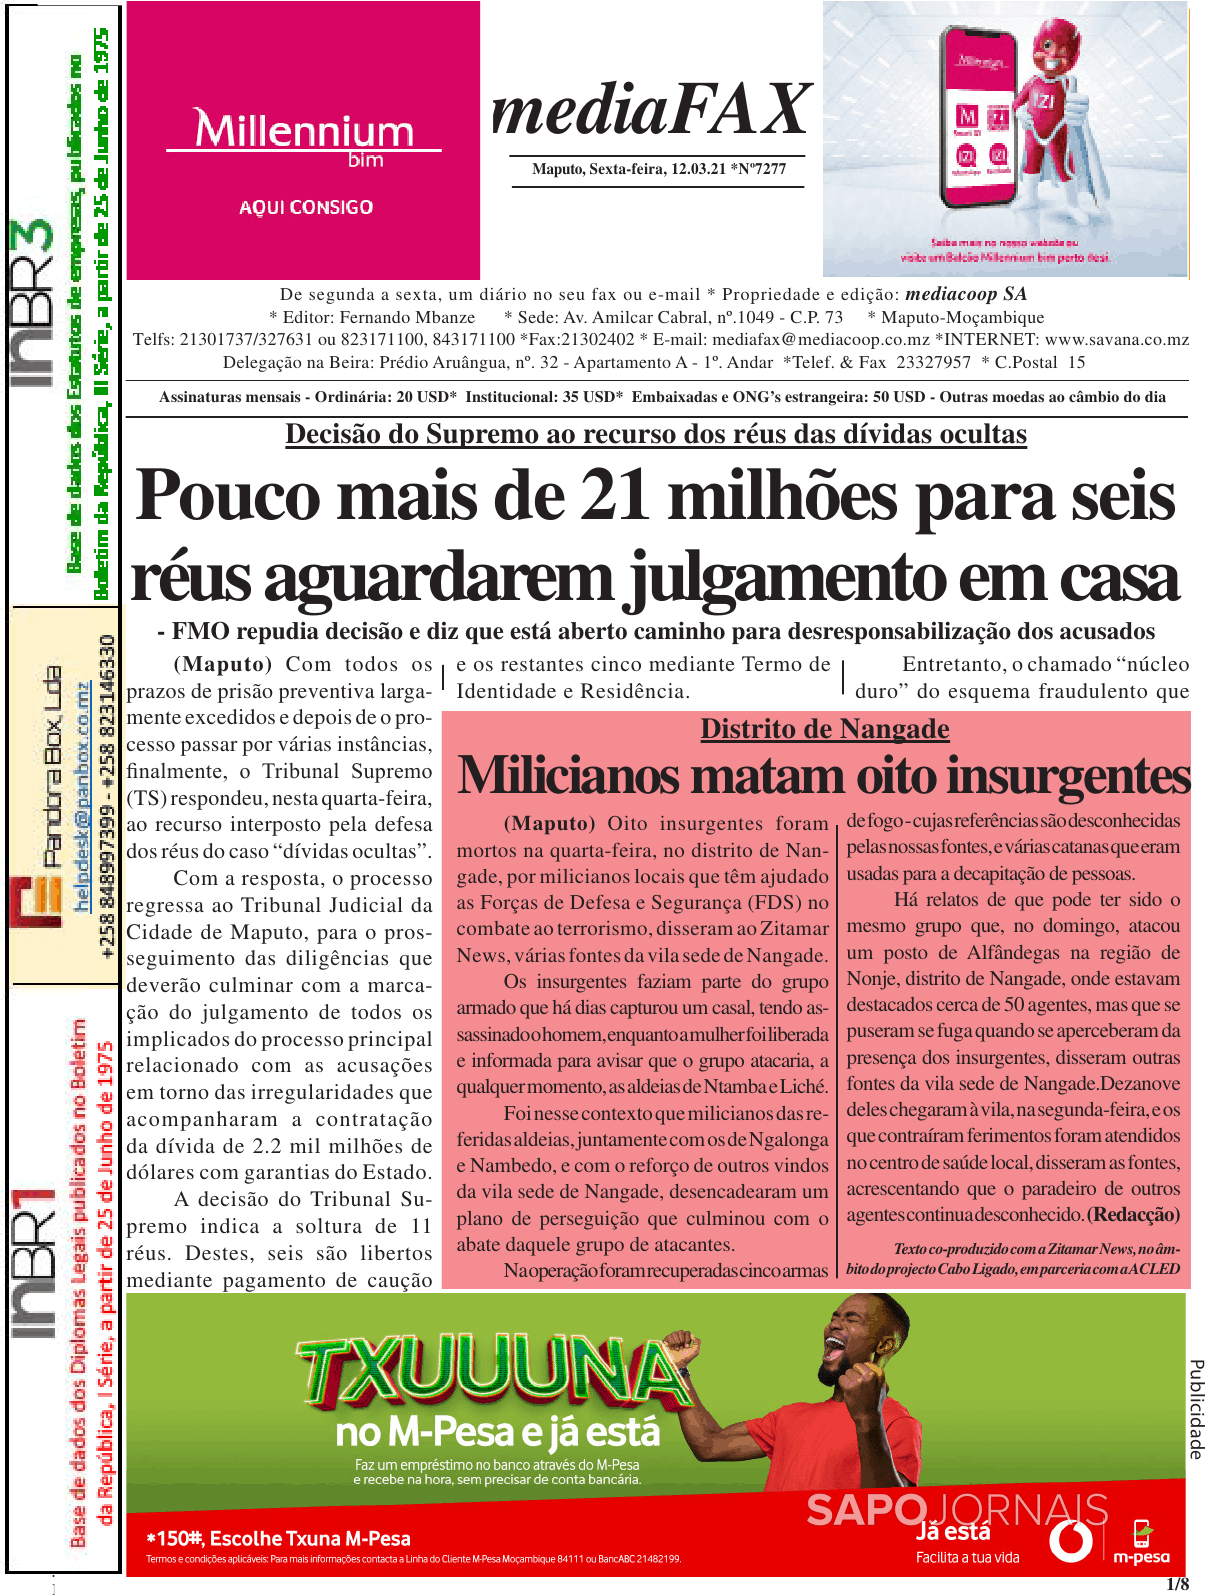 Mediafax Mar Jornais E Revistas Sapo Pt Ltima Hora E Not Cias De Hoje